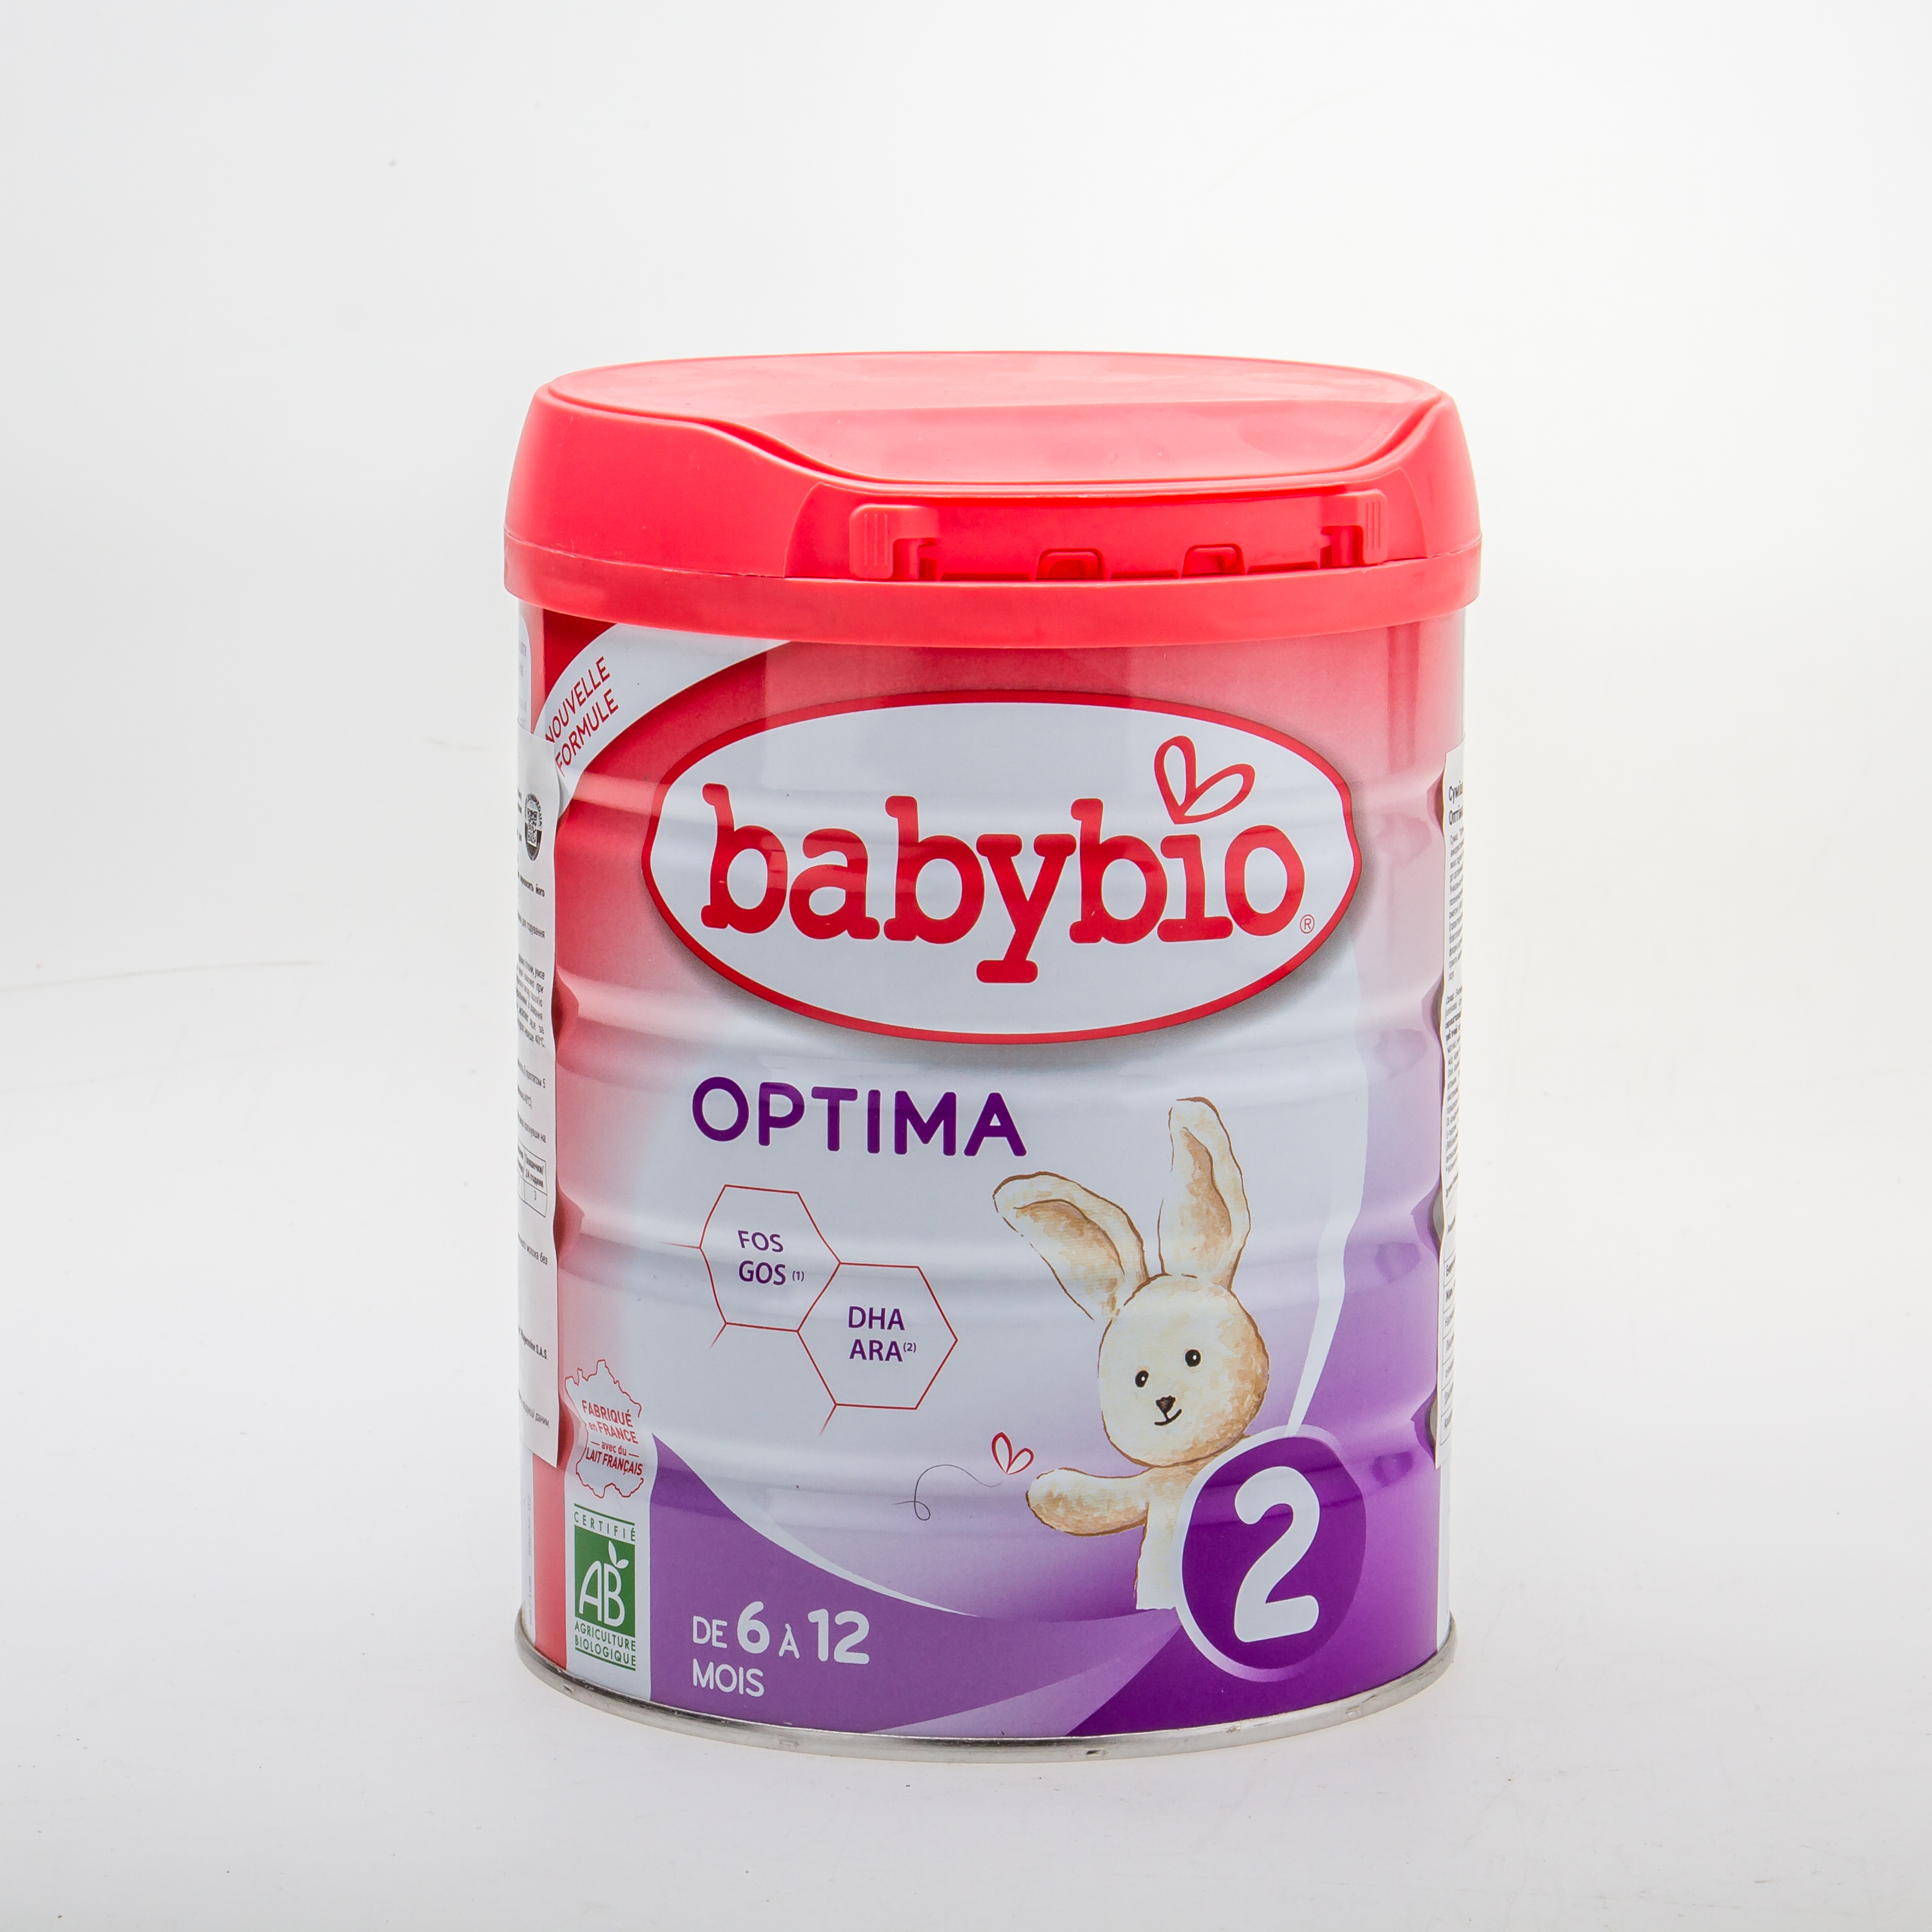 BabyBio Optima2 Суміш дитяча молочна органічна для годування немовлят від 6 до 12 місяців 800 гр - купить в интернет-магазине Юнимед